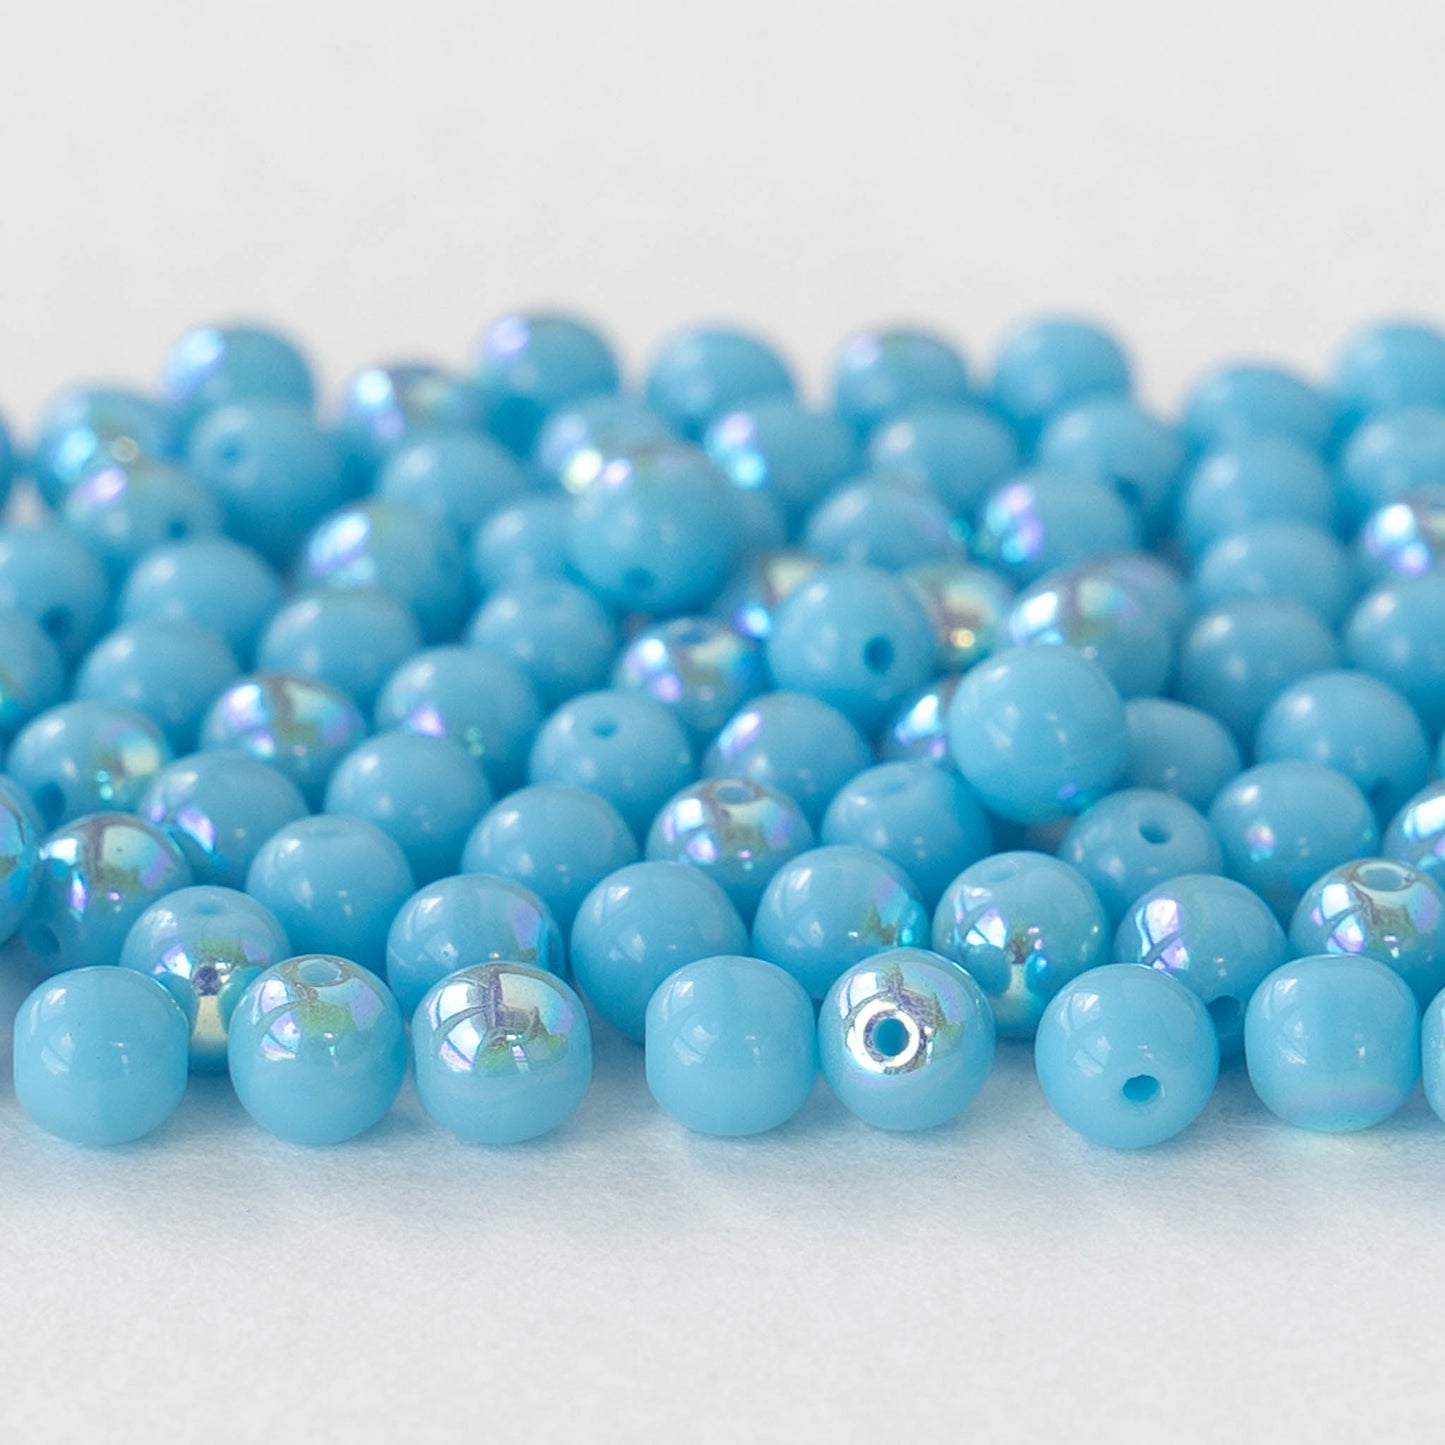 4mm Round Glass Beads - Opaque Aqua Blue AB - 120